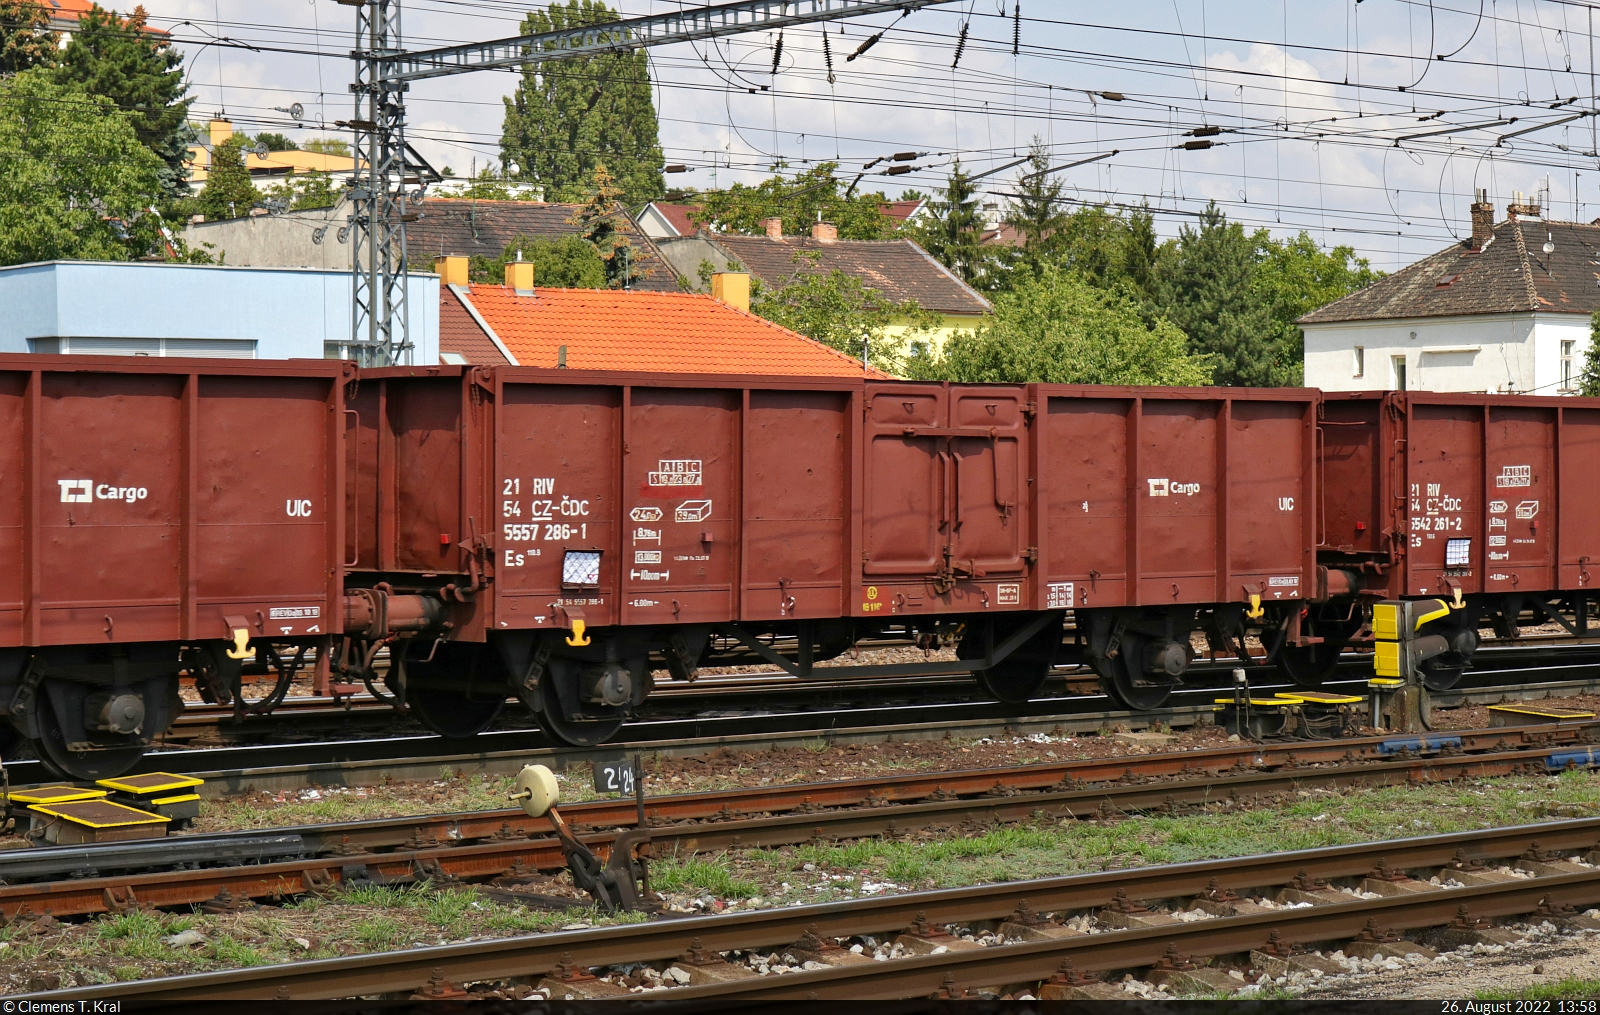 Zweiachsiger tschechischer Hochbordwagen mit der Bezeichnung  Es <sup>110.8</sup>  (21 54 5557 286-1 CZ-ČDC), eingereiht zusammen mit vielen Artgenossen in einem Güterzug mit 230 053-1, der Bratislava hl.st. (SK) in östlicher Richtung durchquert.

🧰 ČD Cargo, a.s.
🕓 26.8.2022 | 13:58 Uhr